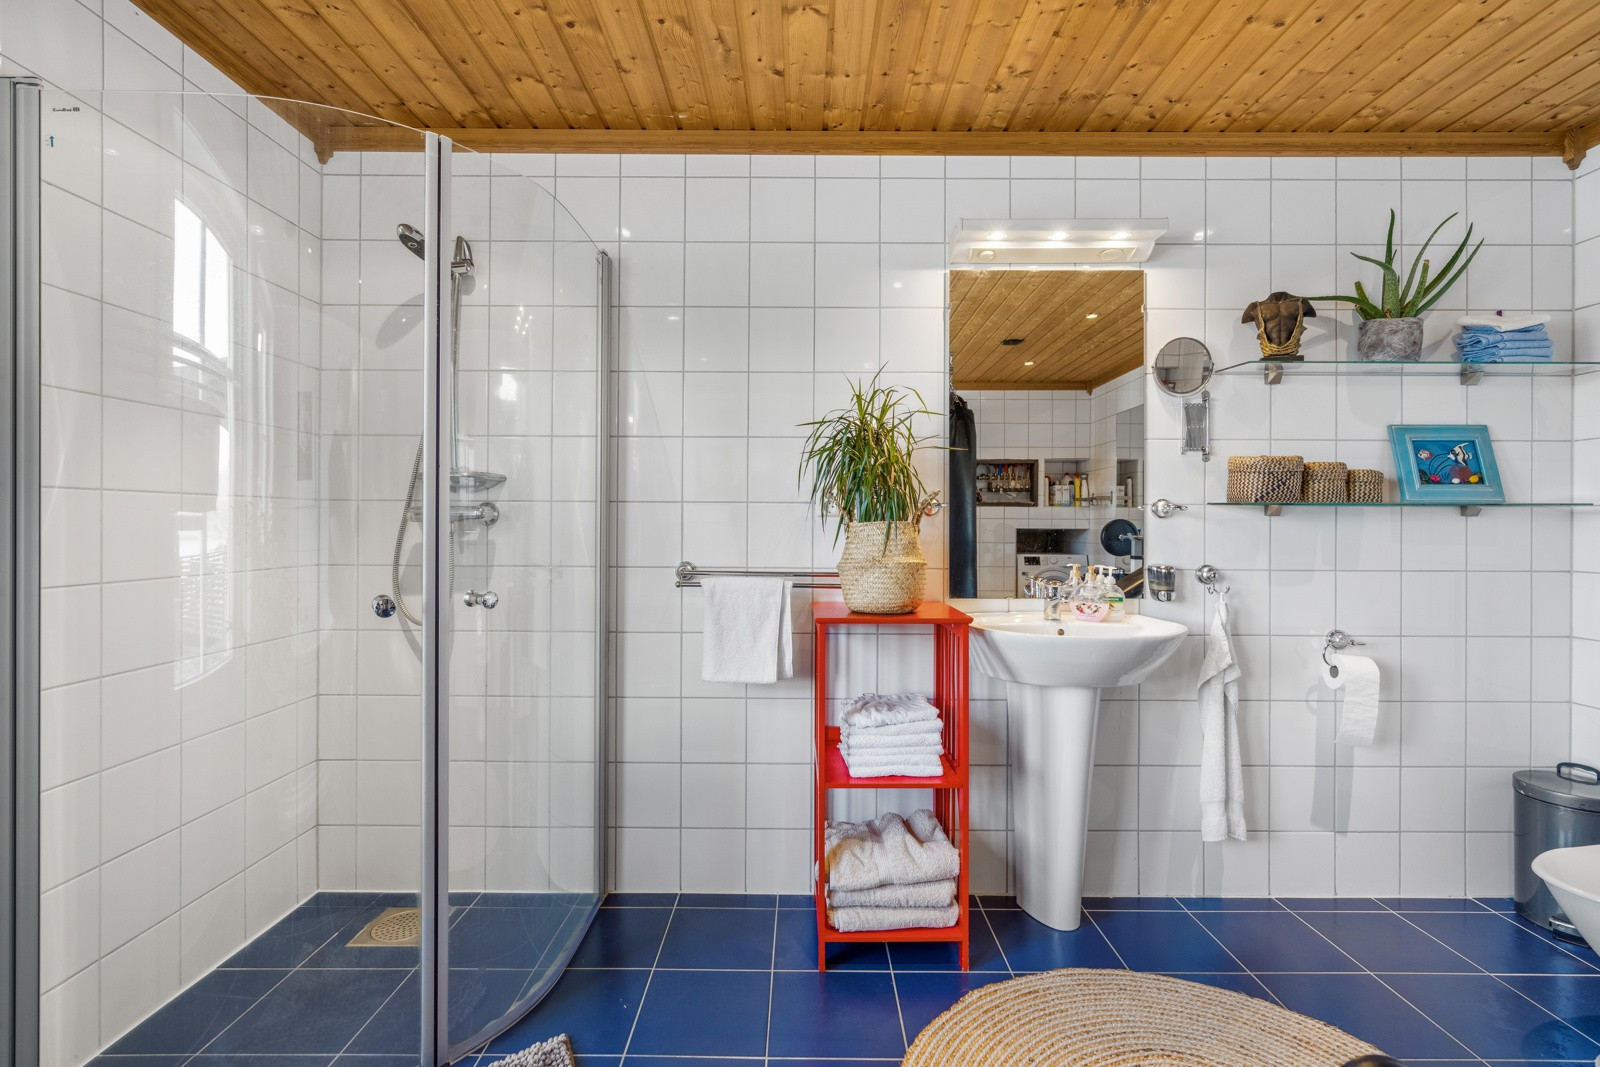 Innredet med badekar, et praktisk og plassbesparende dusjhjørne,servant og toalett.